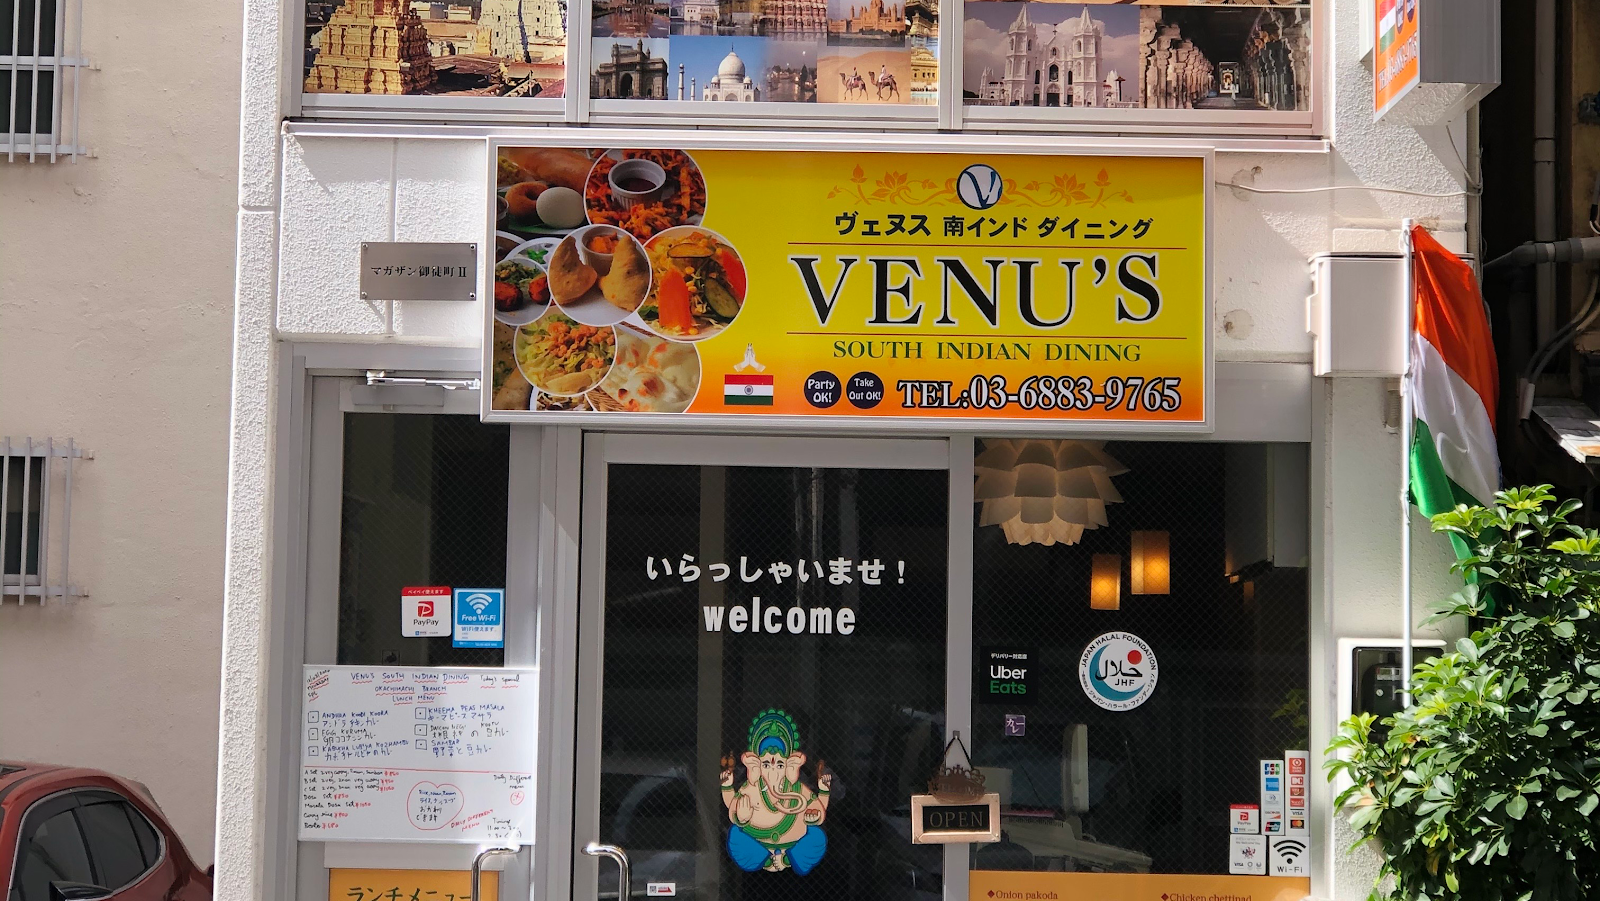 VENU'S(ヴェヌス)南インドダイニング 御徒町店にて